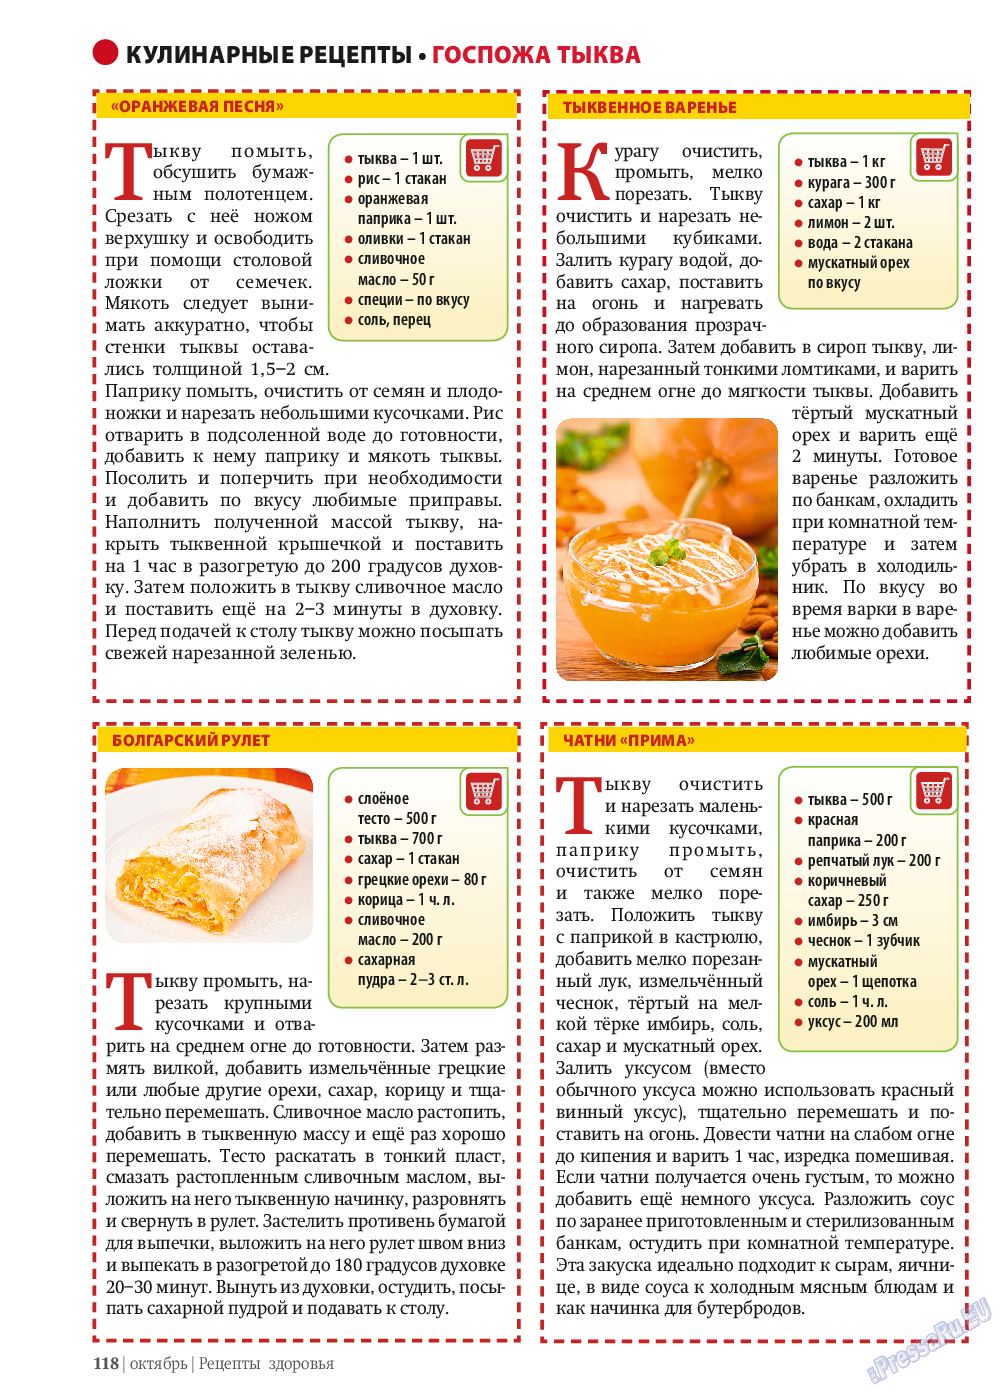 Рецепты здоровья, журнал. 2013 №10 стр.118